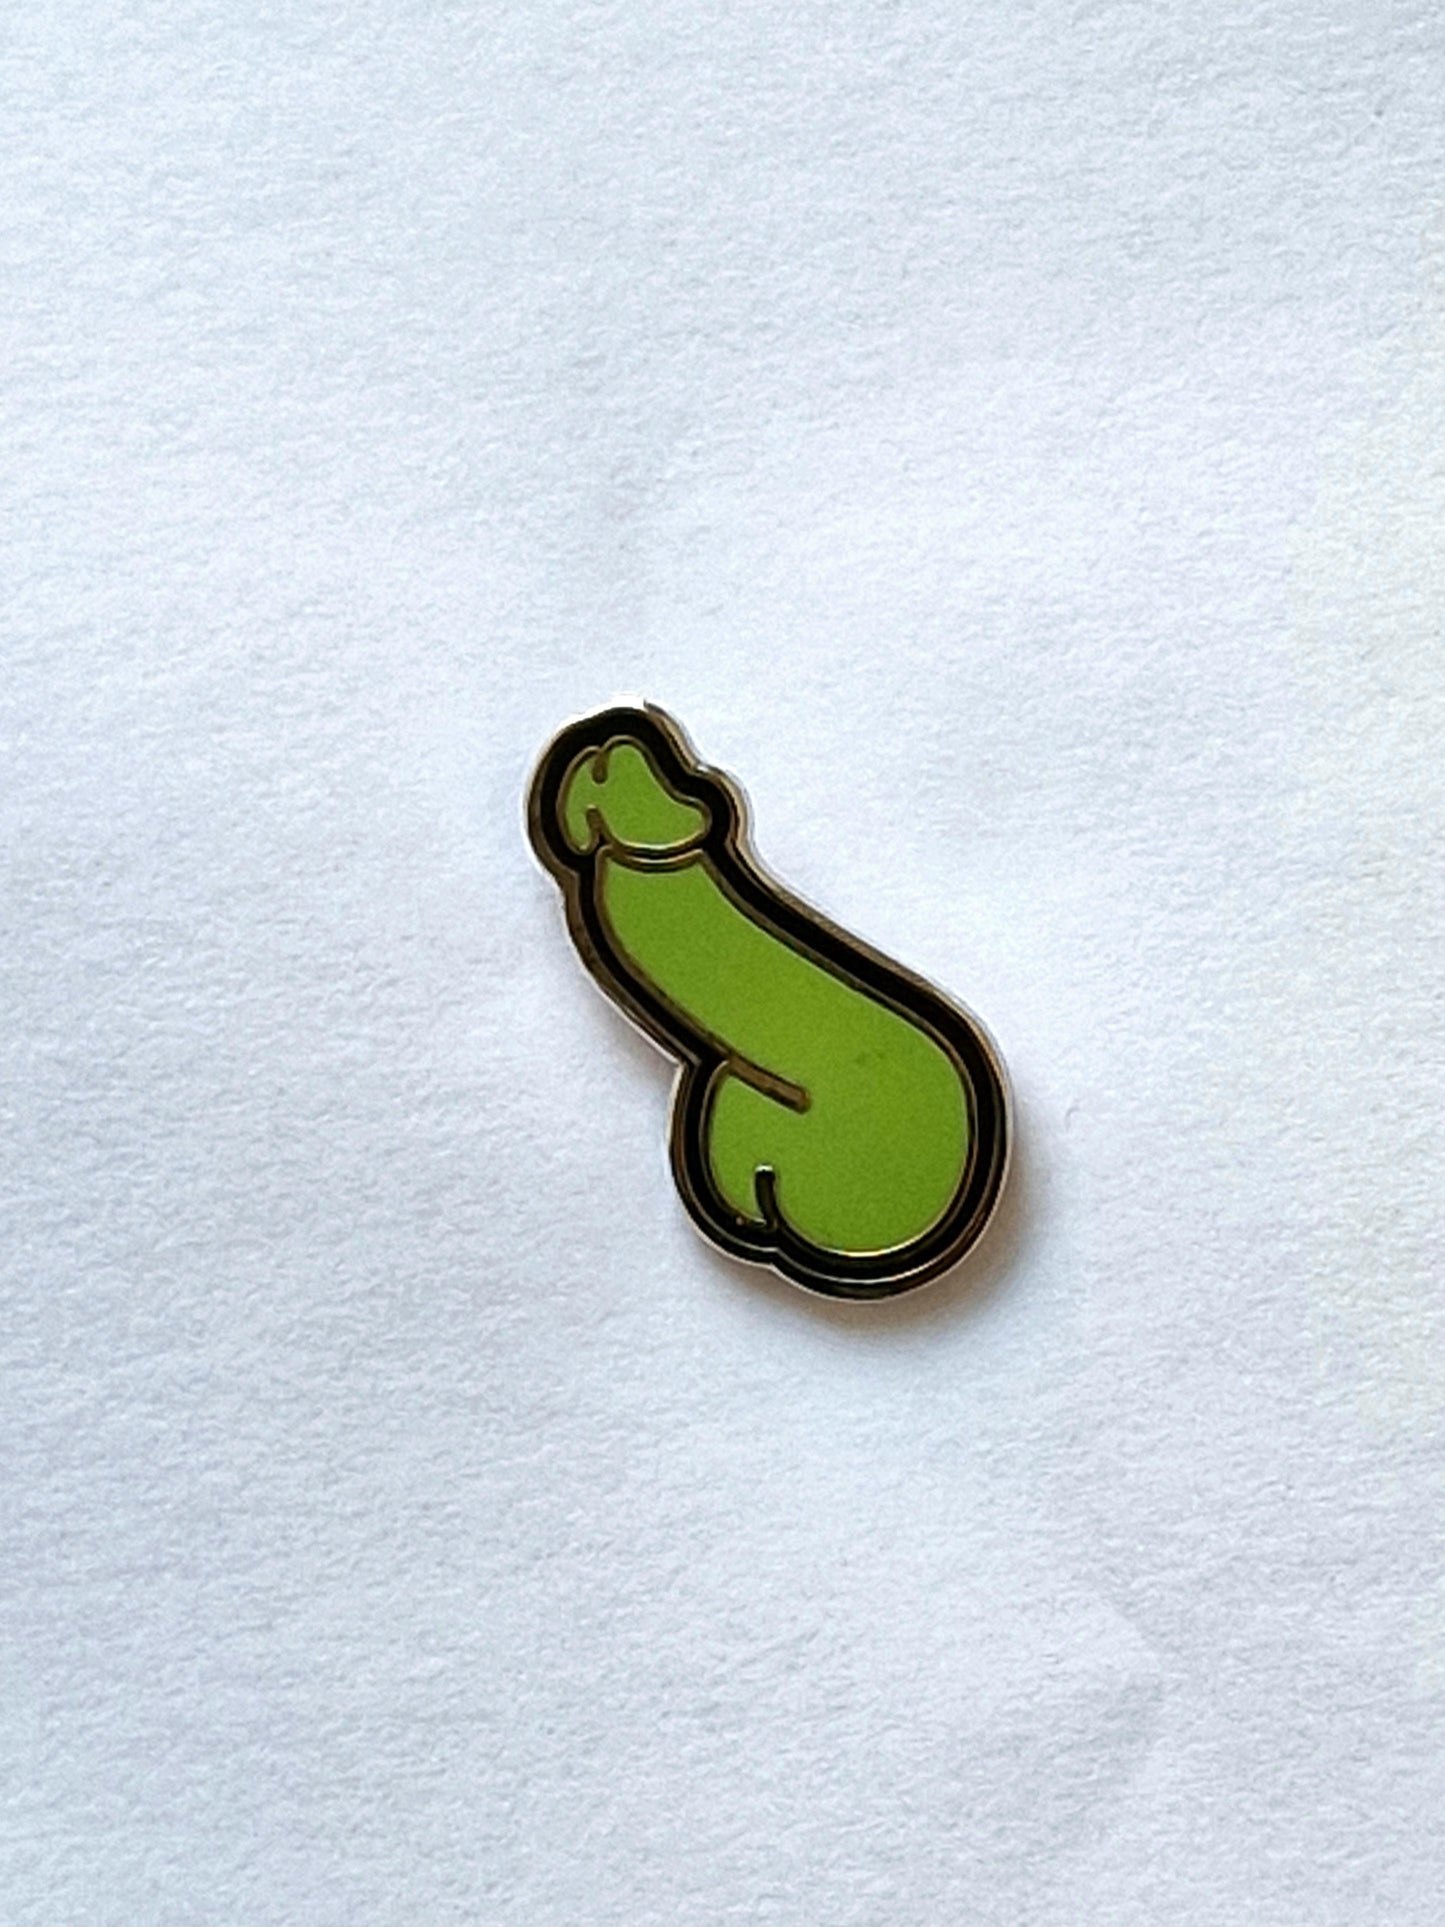 En rolig och annorlunda pins I form av en grön och svart dick.